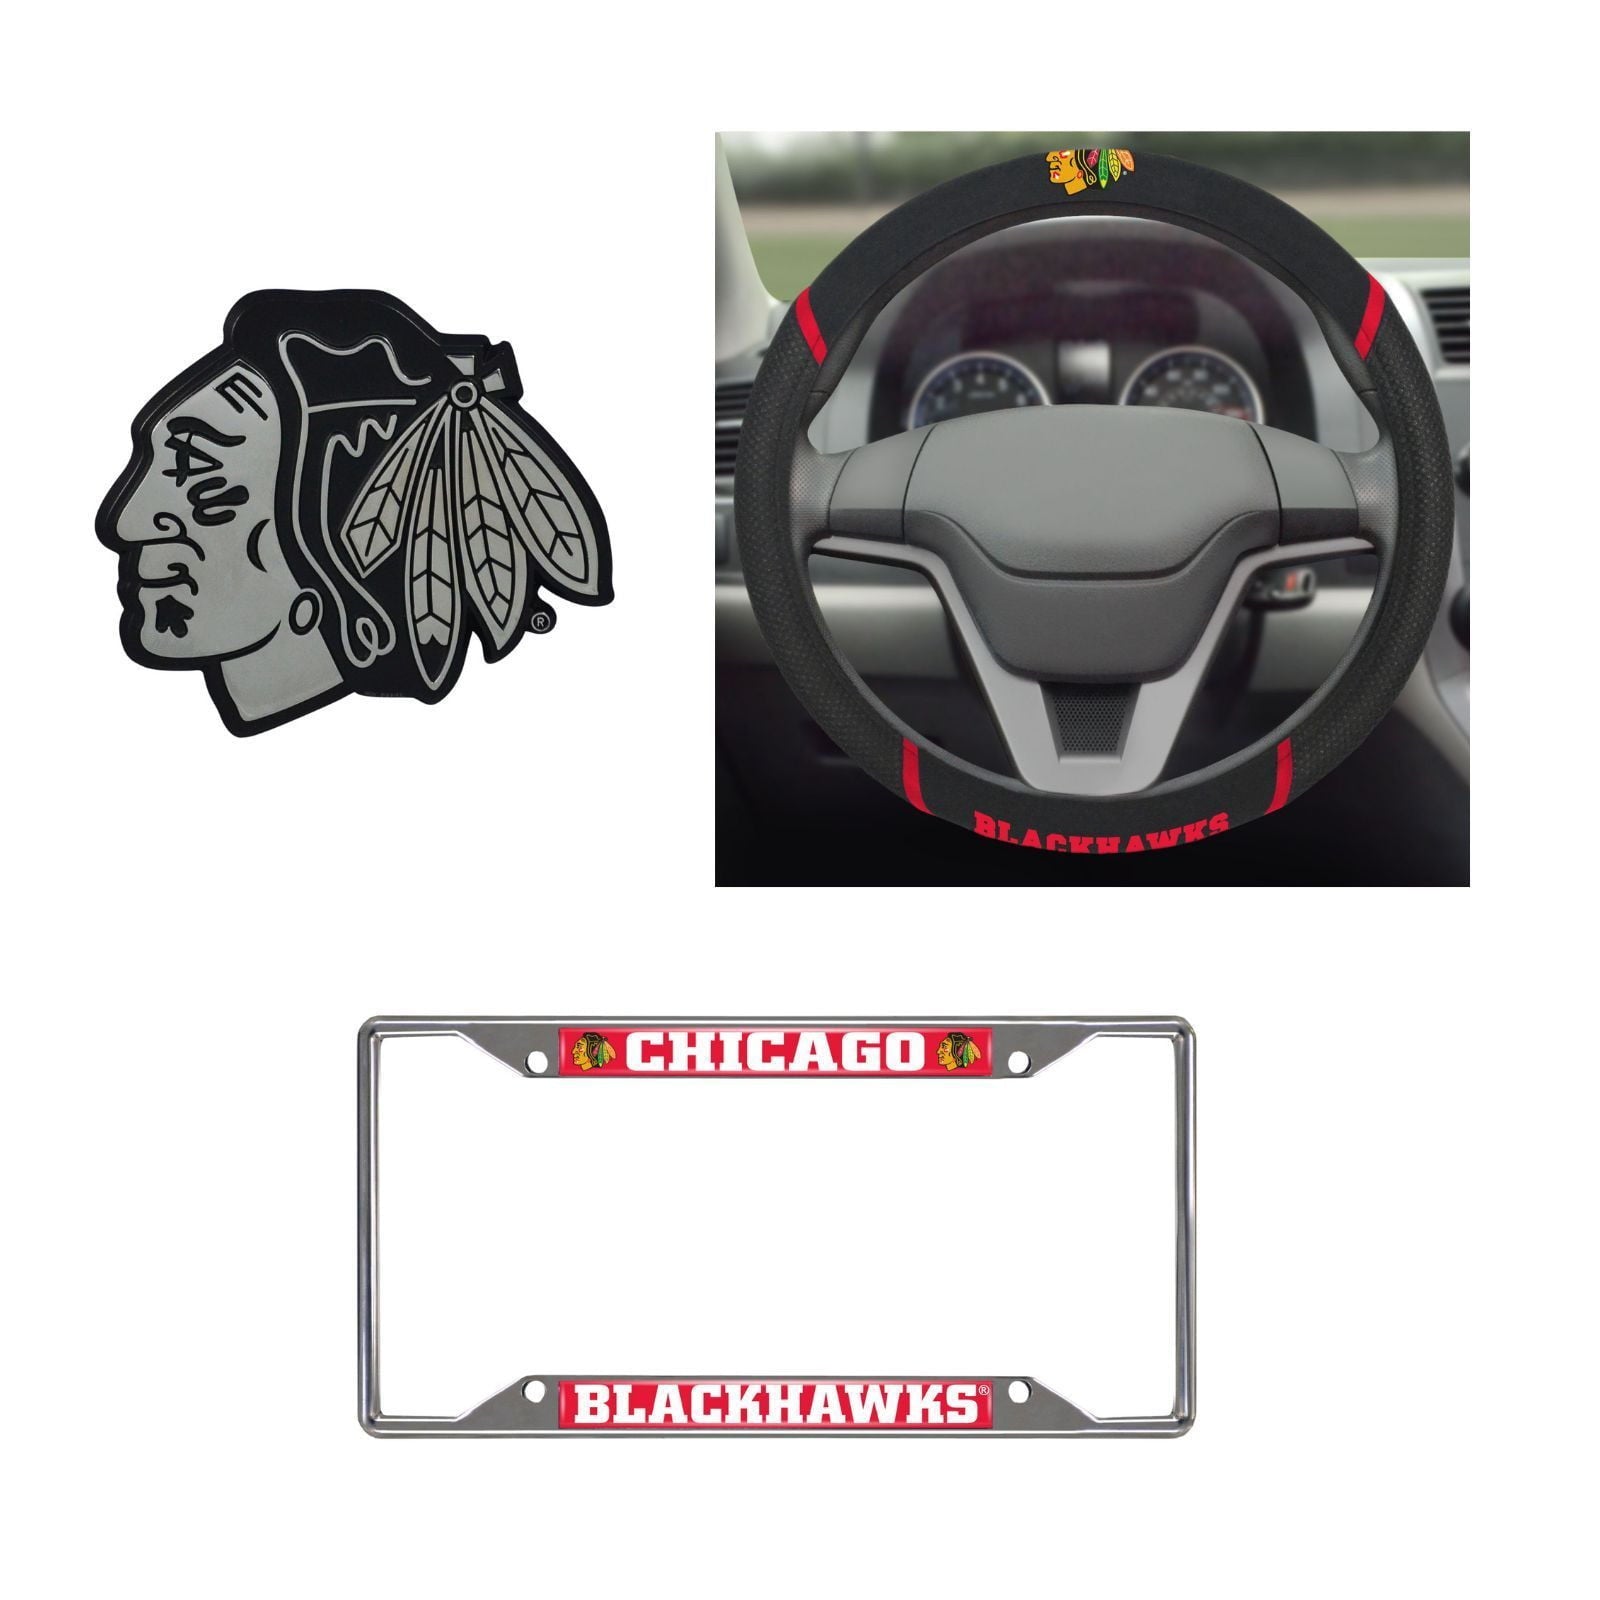 Chicago Blackhawks Steering Wheel Cover, License Plate Frame, 3D Chrome Emblem